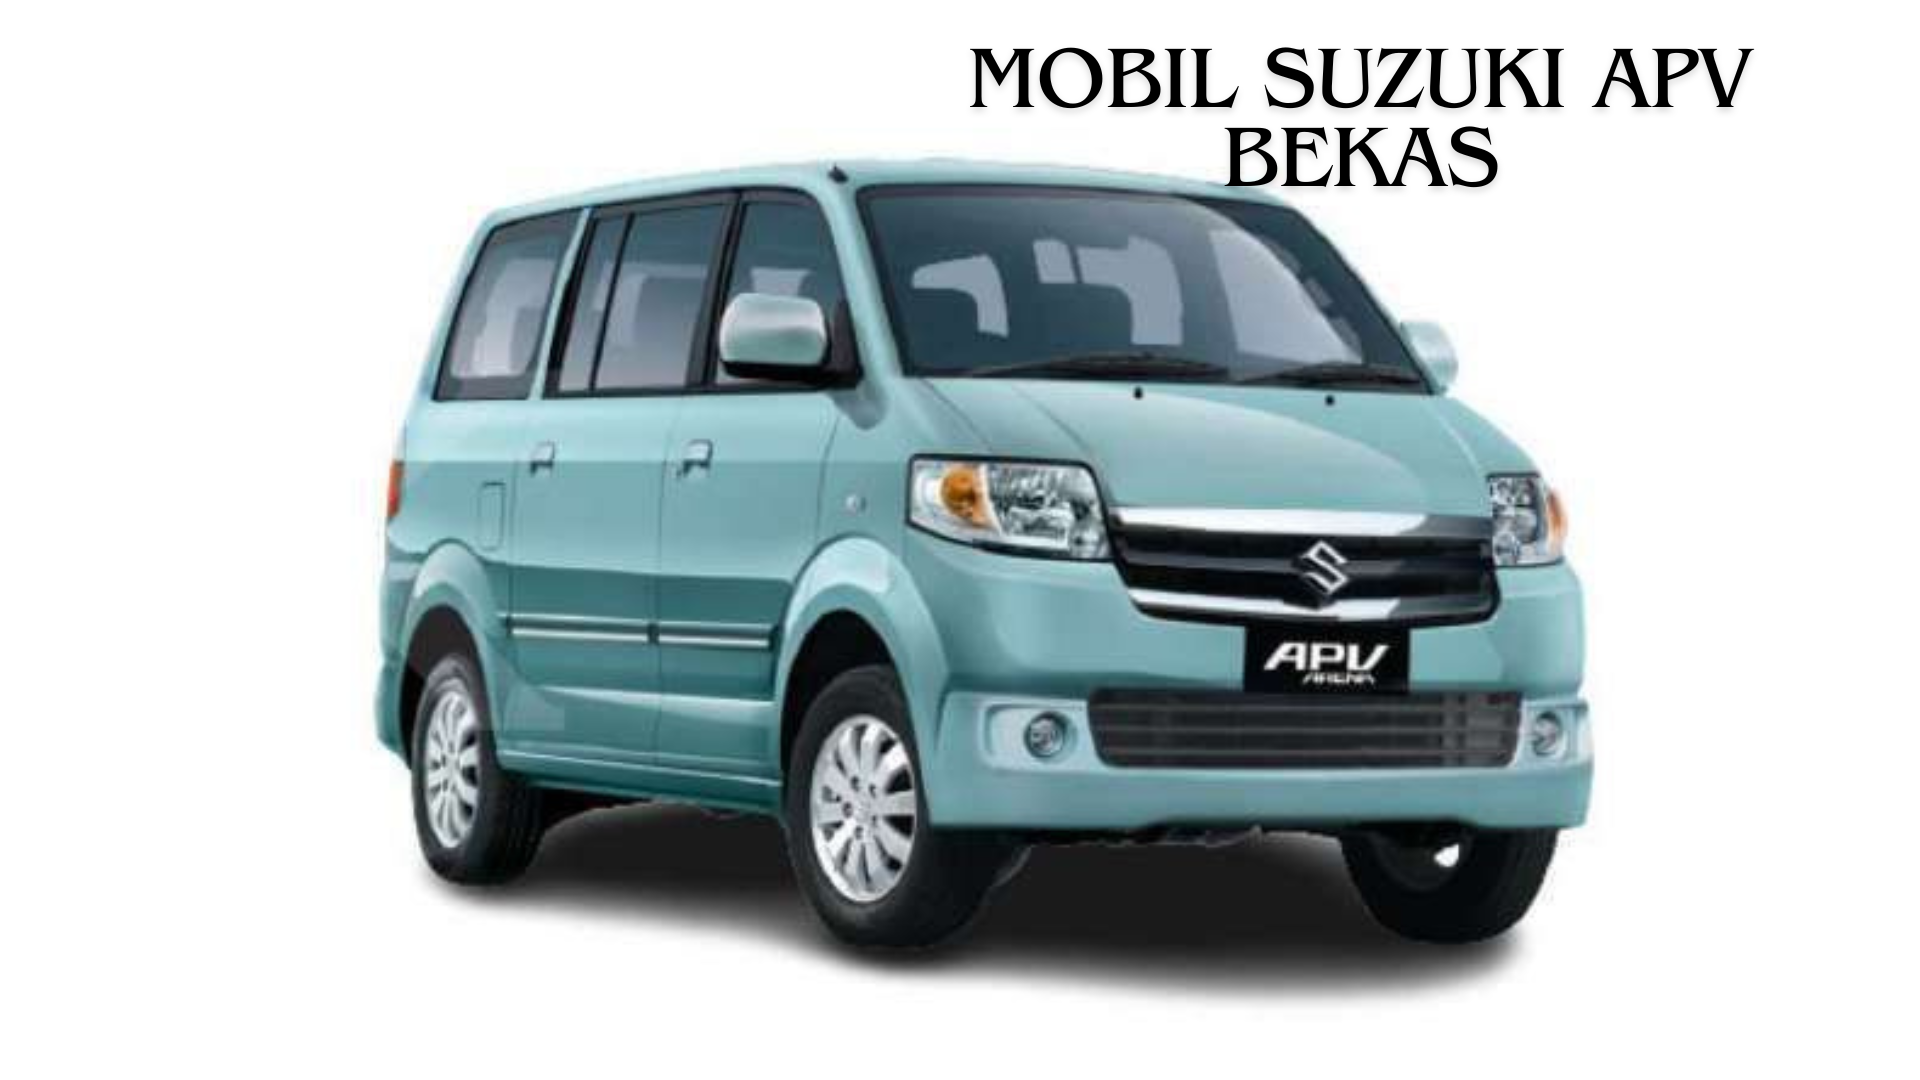 Mobil Suzuki APV Bekas, Simak Harga dan Keunggulan Mobil yang Laris di Pasaran Otomotif Indonesia